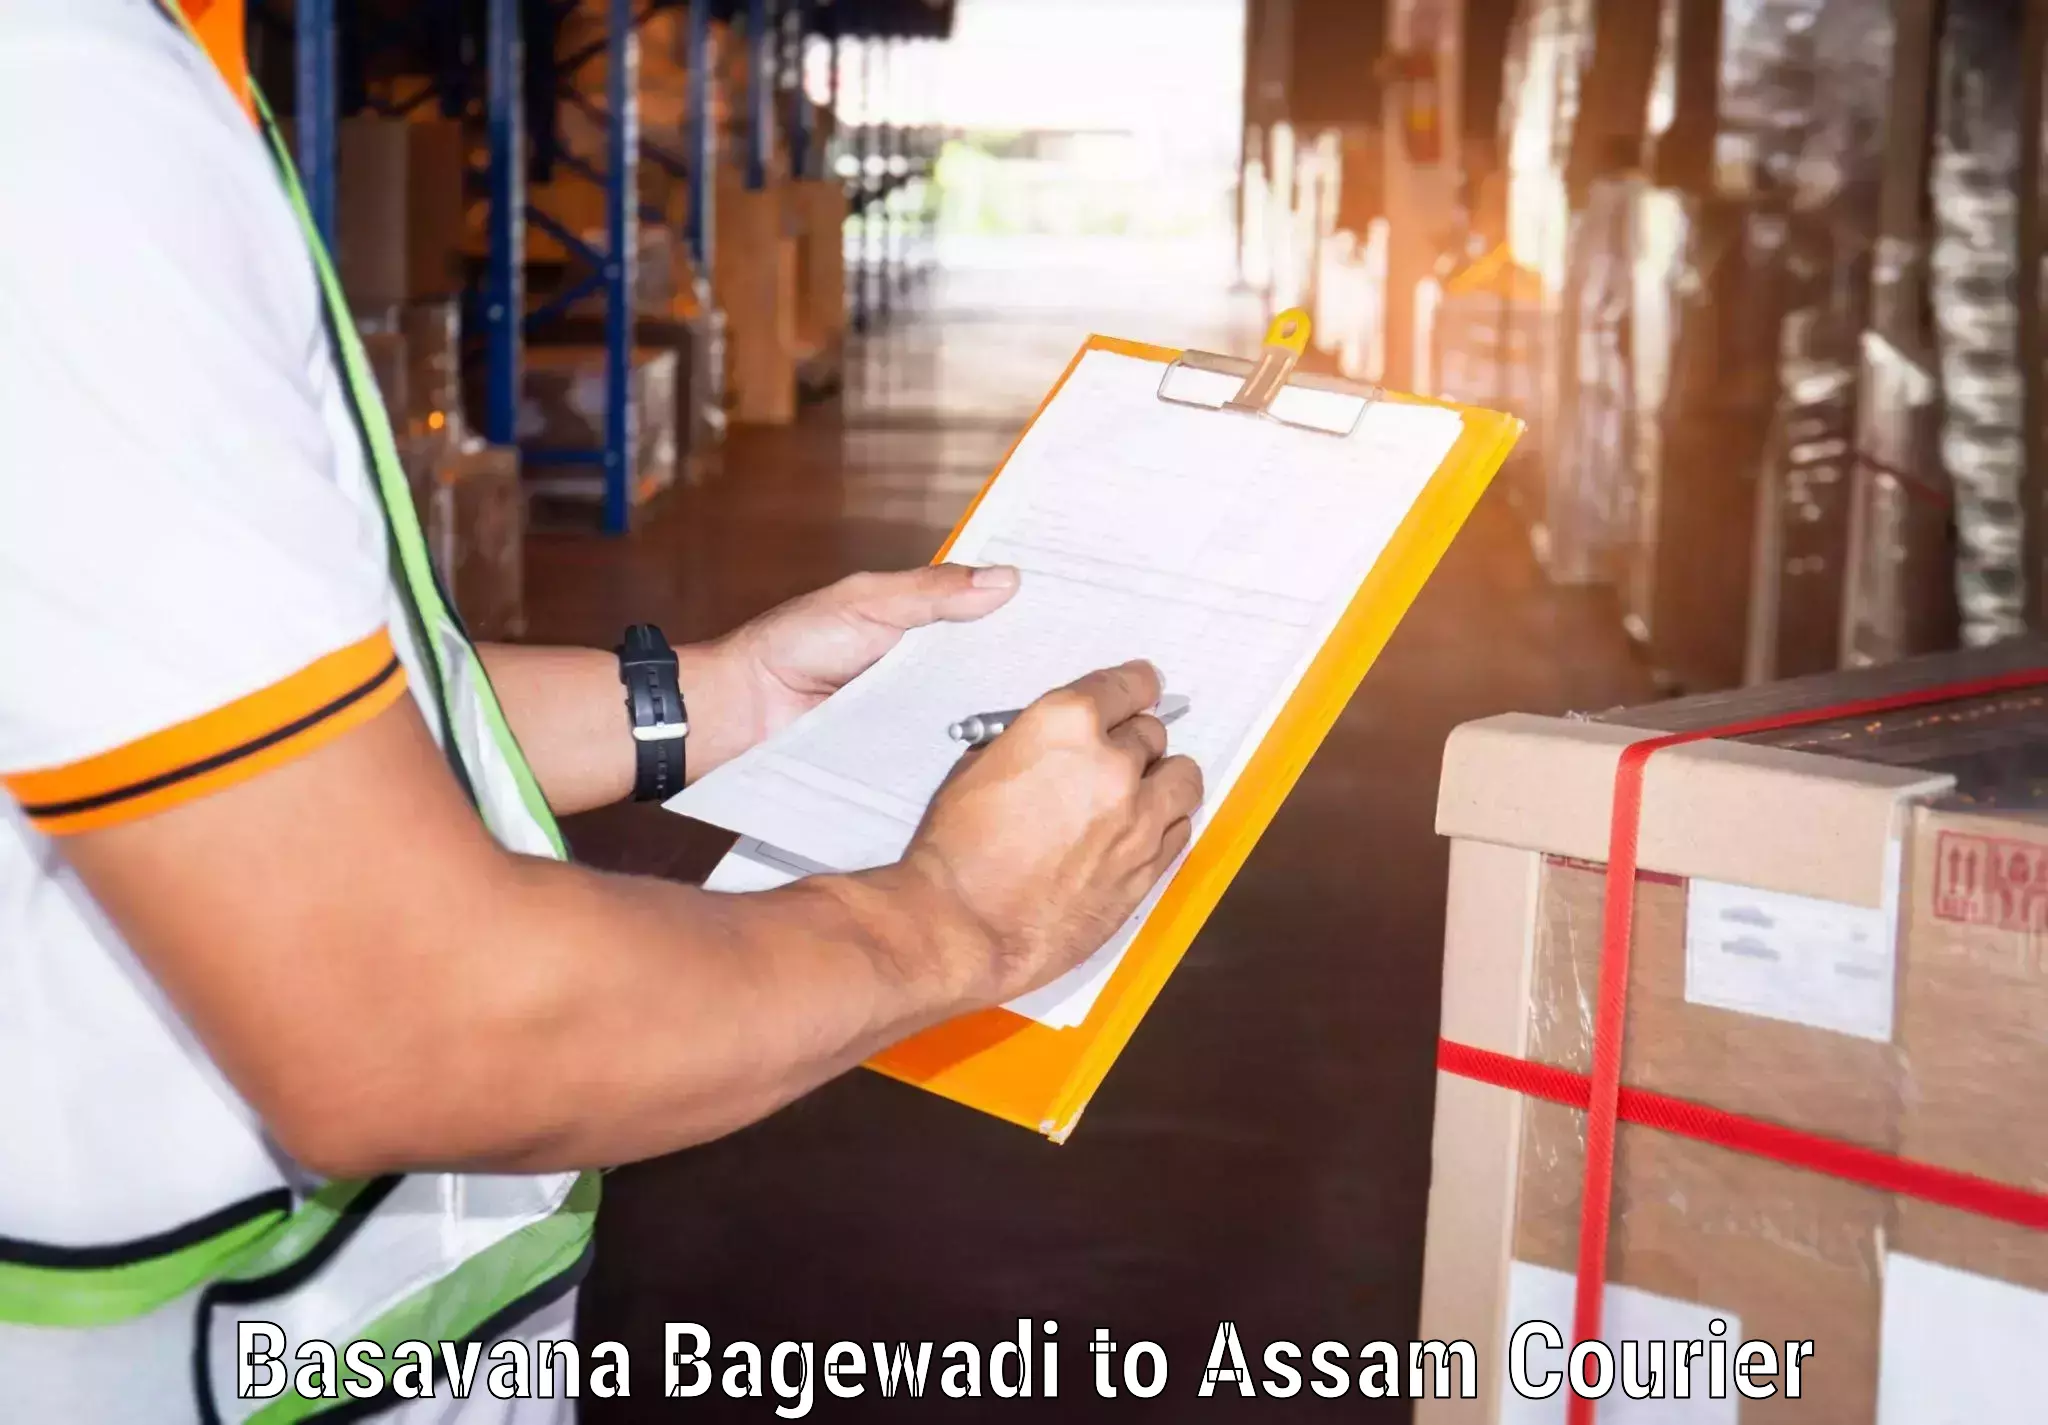 Ocean freight courier Basavana Bagewadi to Mirza Kamrup